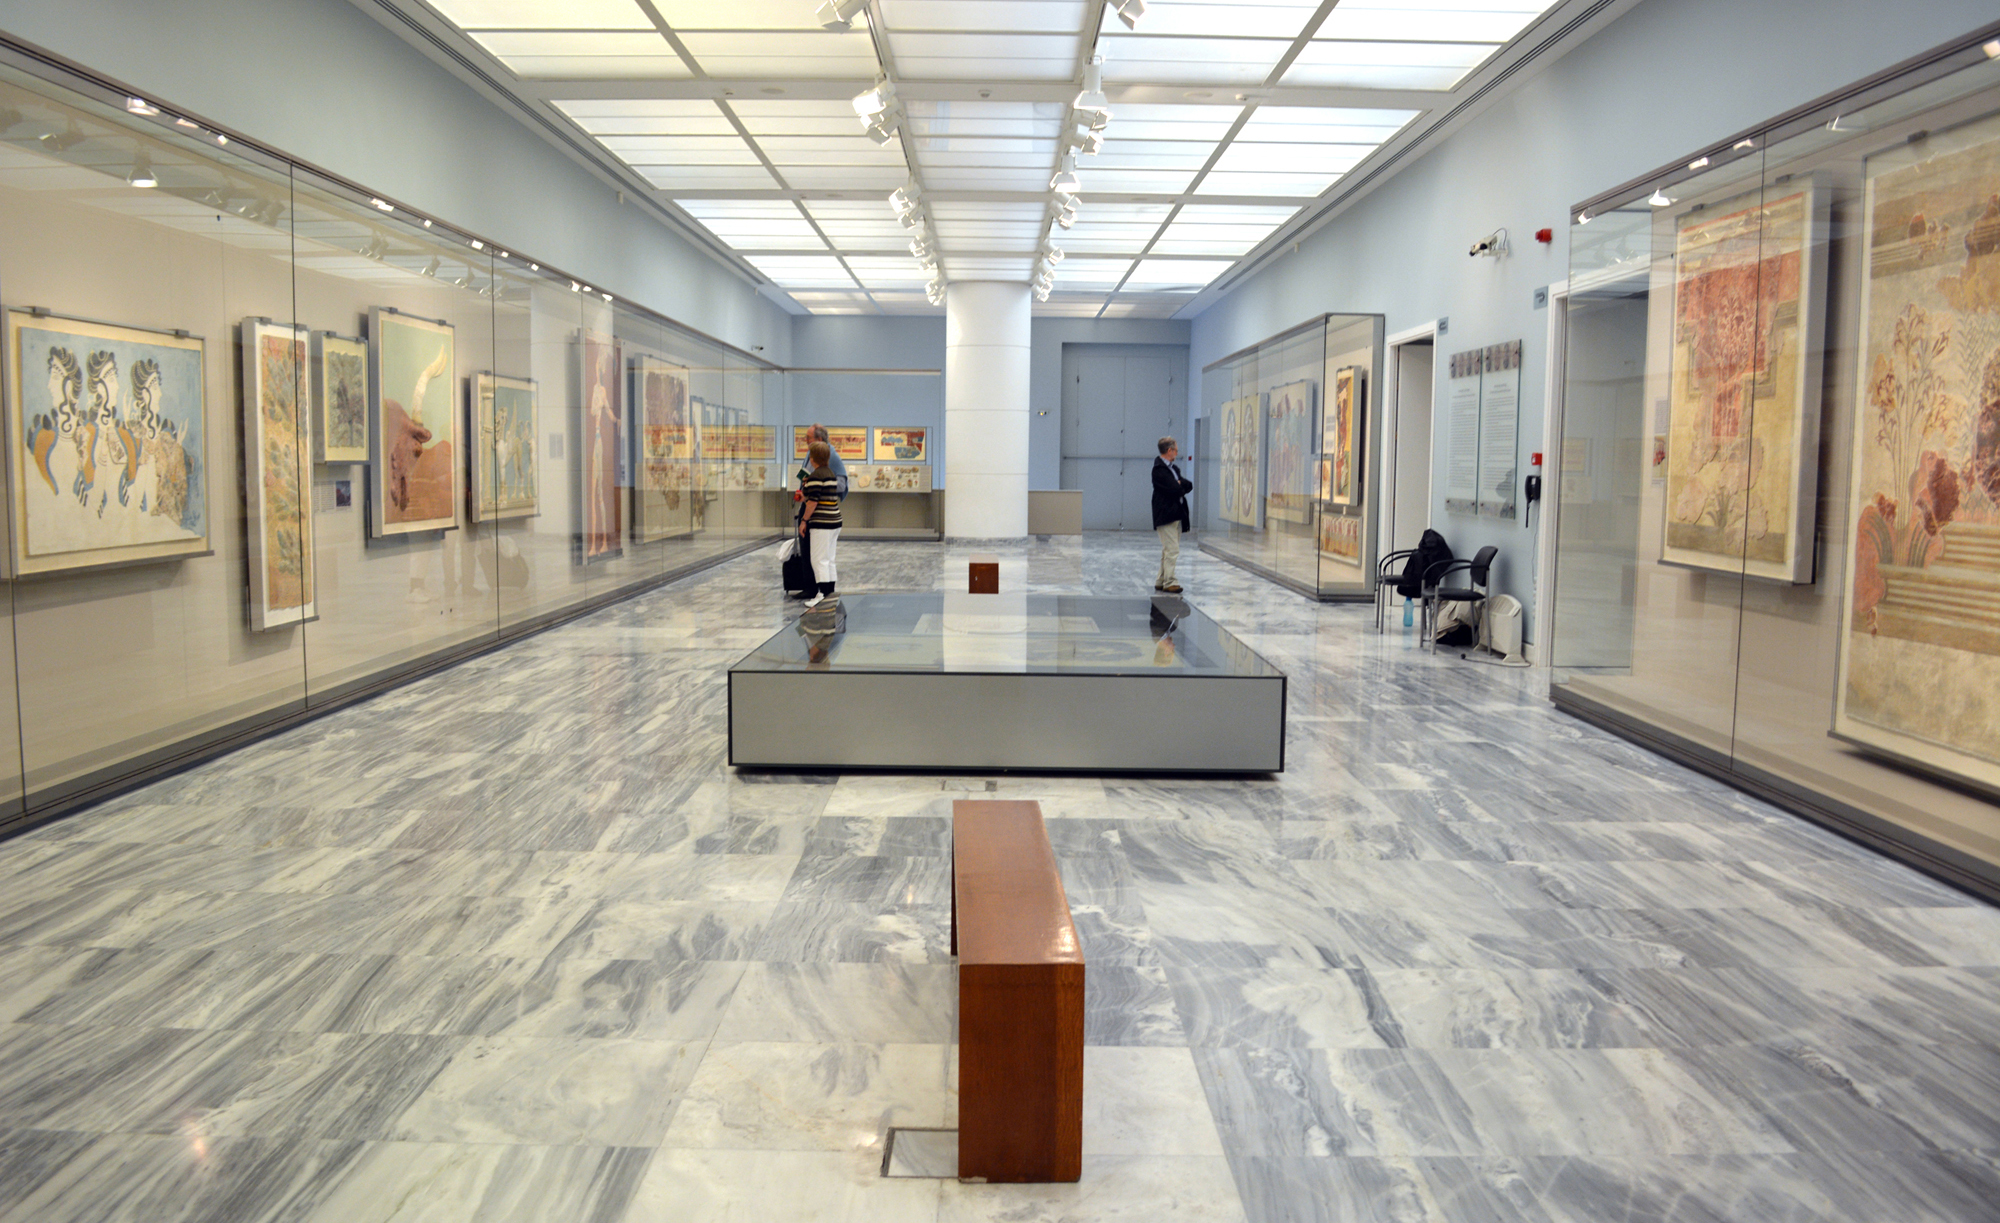 Πρωτιά στην αύξηση επισκεπτών στο Αρχαιολογικό Μουσείο Ηρακλείου τον Οκτώβριο